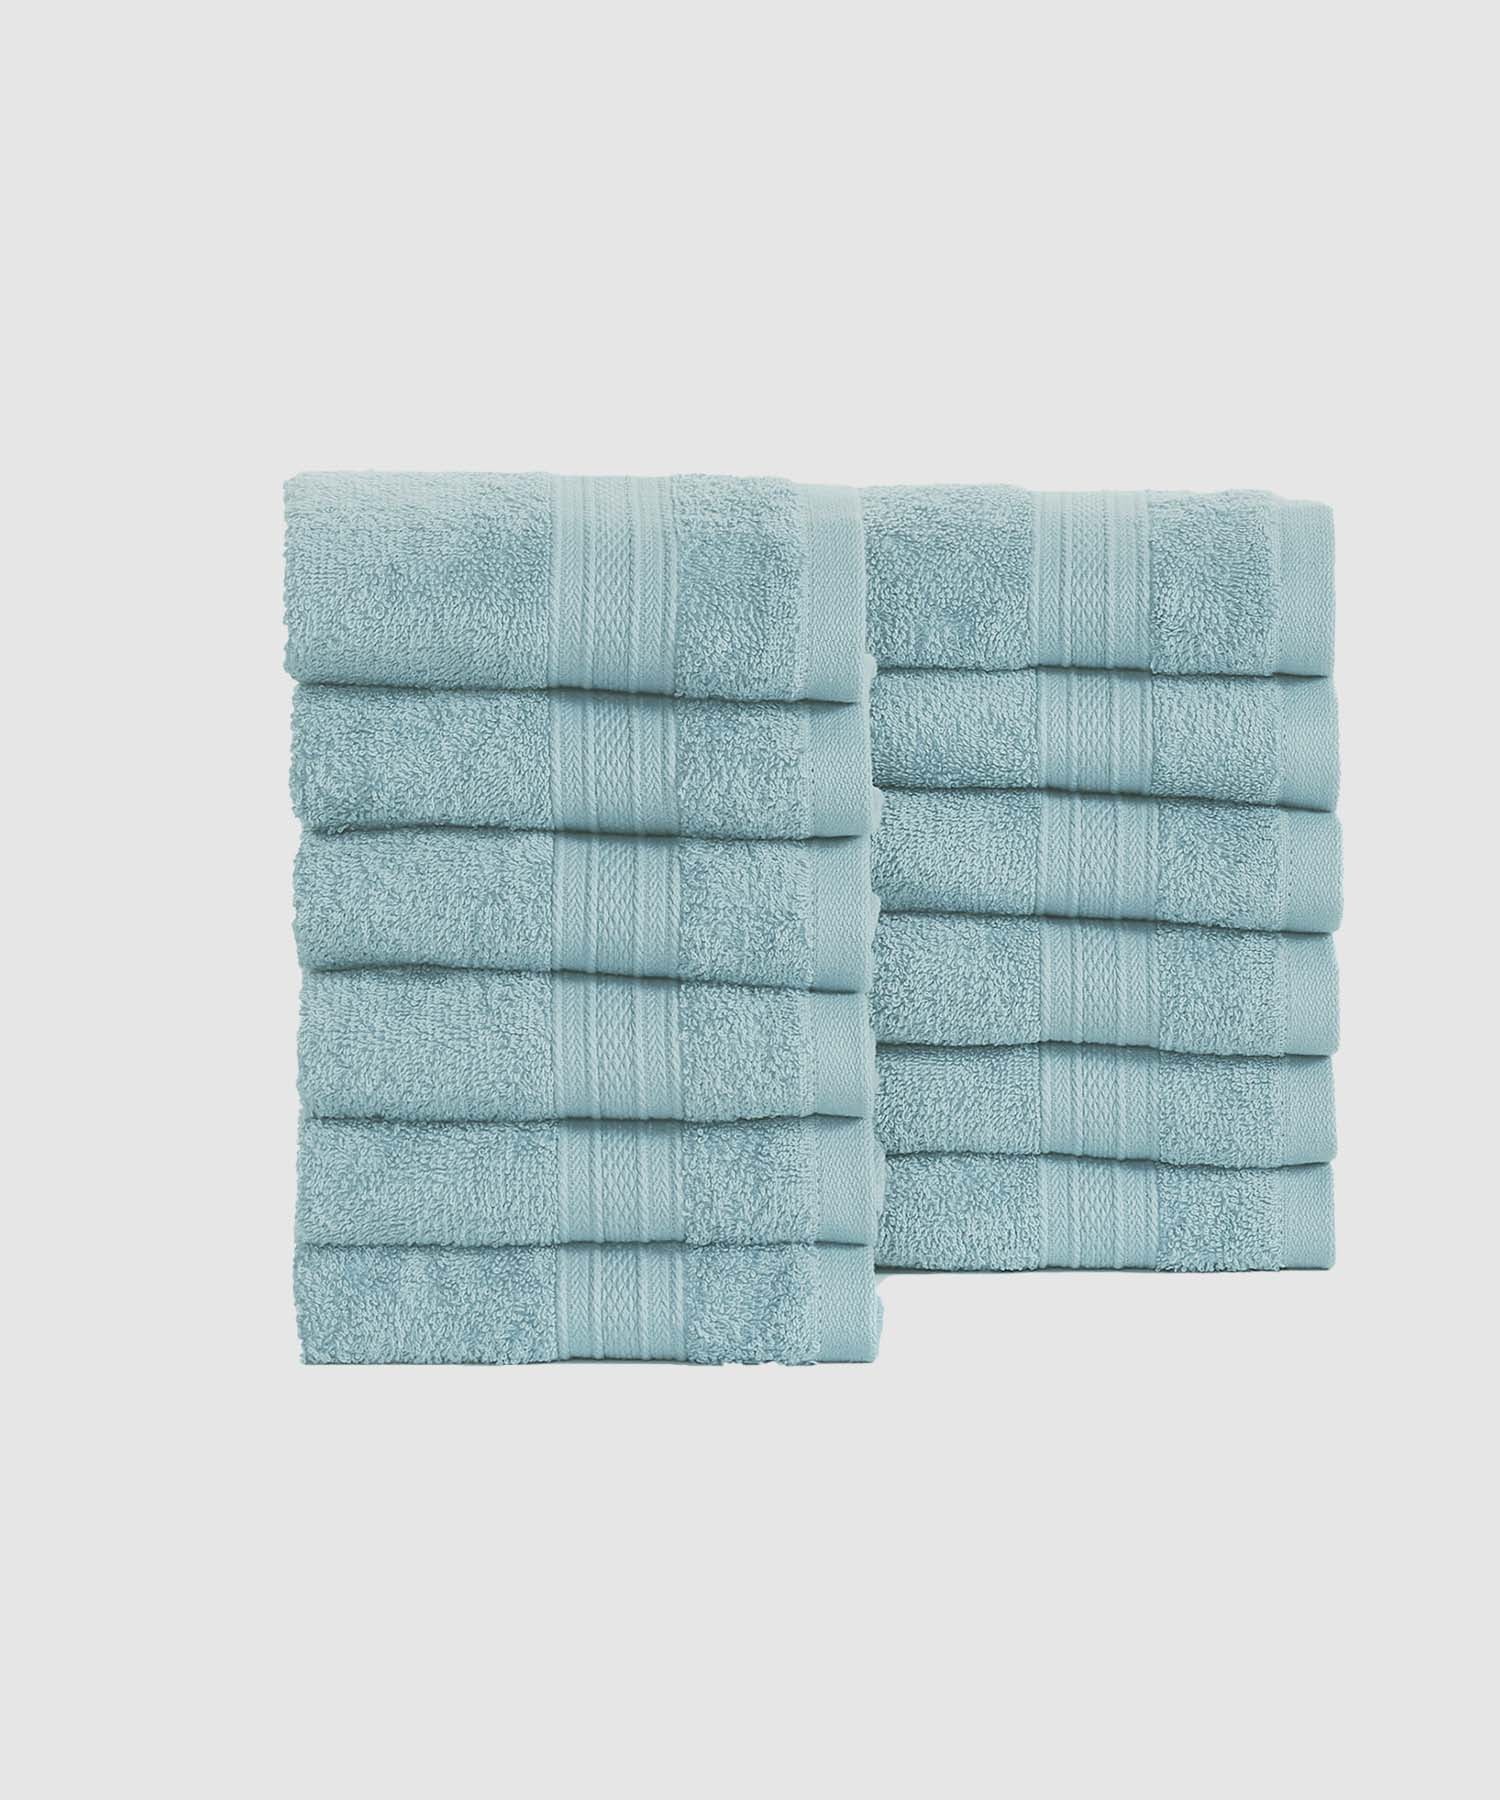 12 Pieces Face Towels ₹599/-